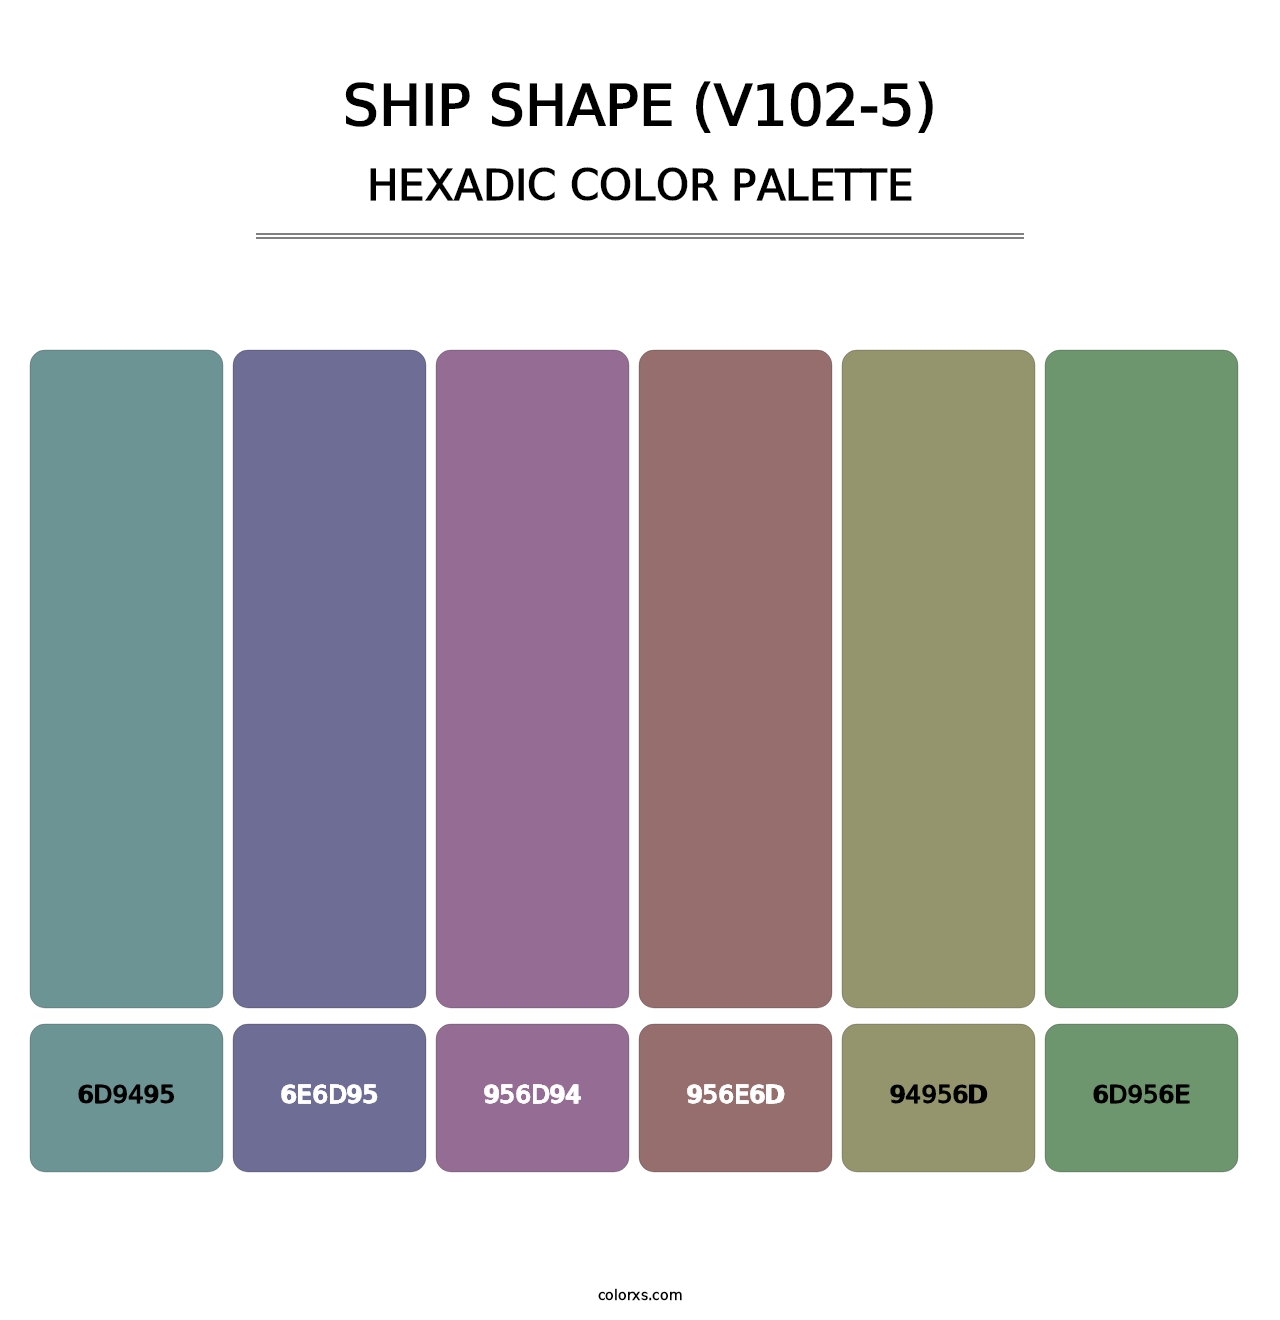 Ship Shape (V102-5) - Hexadic Color Palette